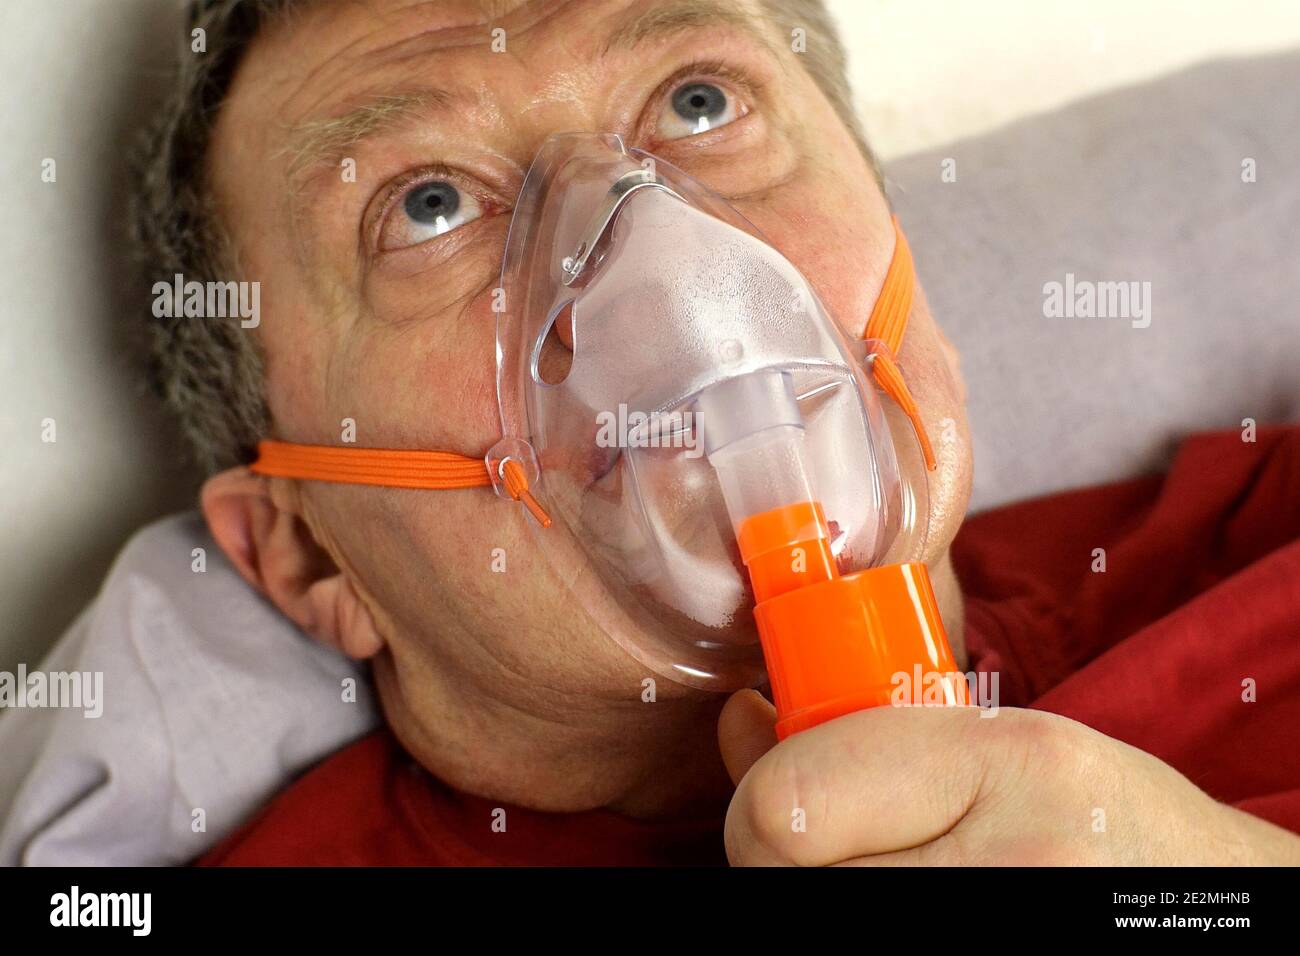 Kranker älterer Erwachsener atmet durch Sauerstoffmaske und rollt die  Augen. Behandlung von Asthma, Allergien, Bronchitis, Lungenentzündung bei  Covid-19 und Atemschutzmaske Stockfotografie - Alamy